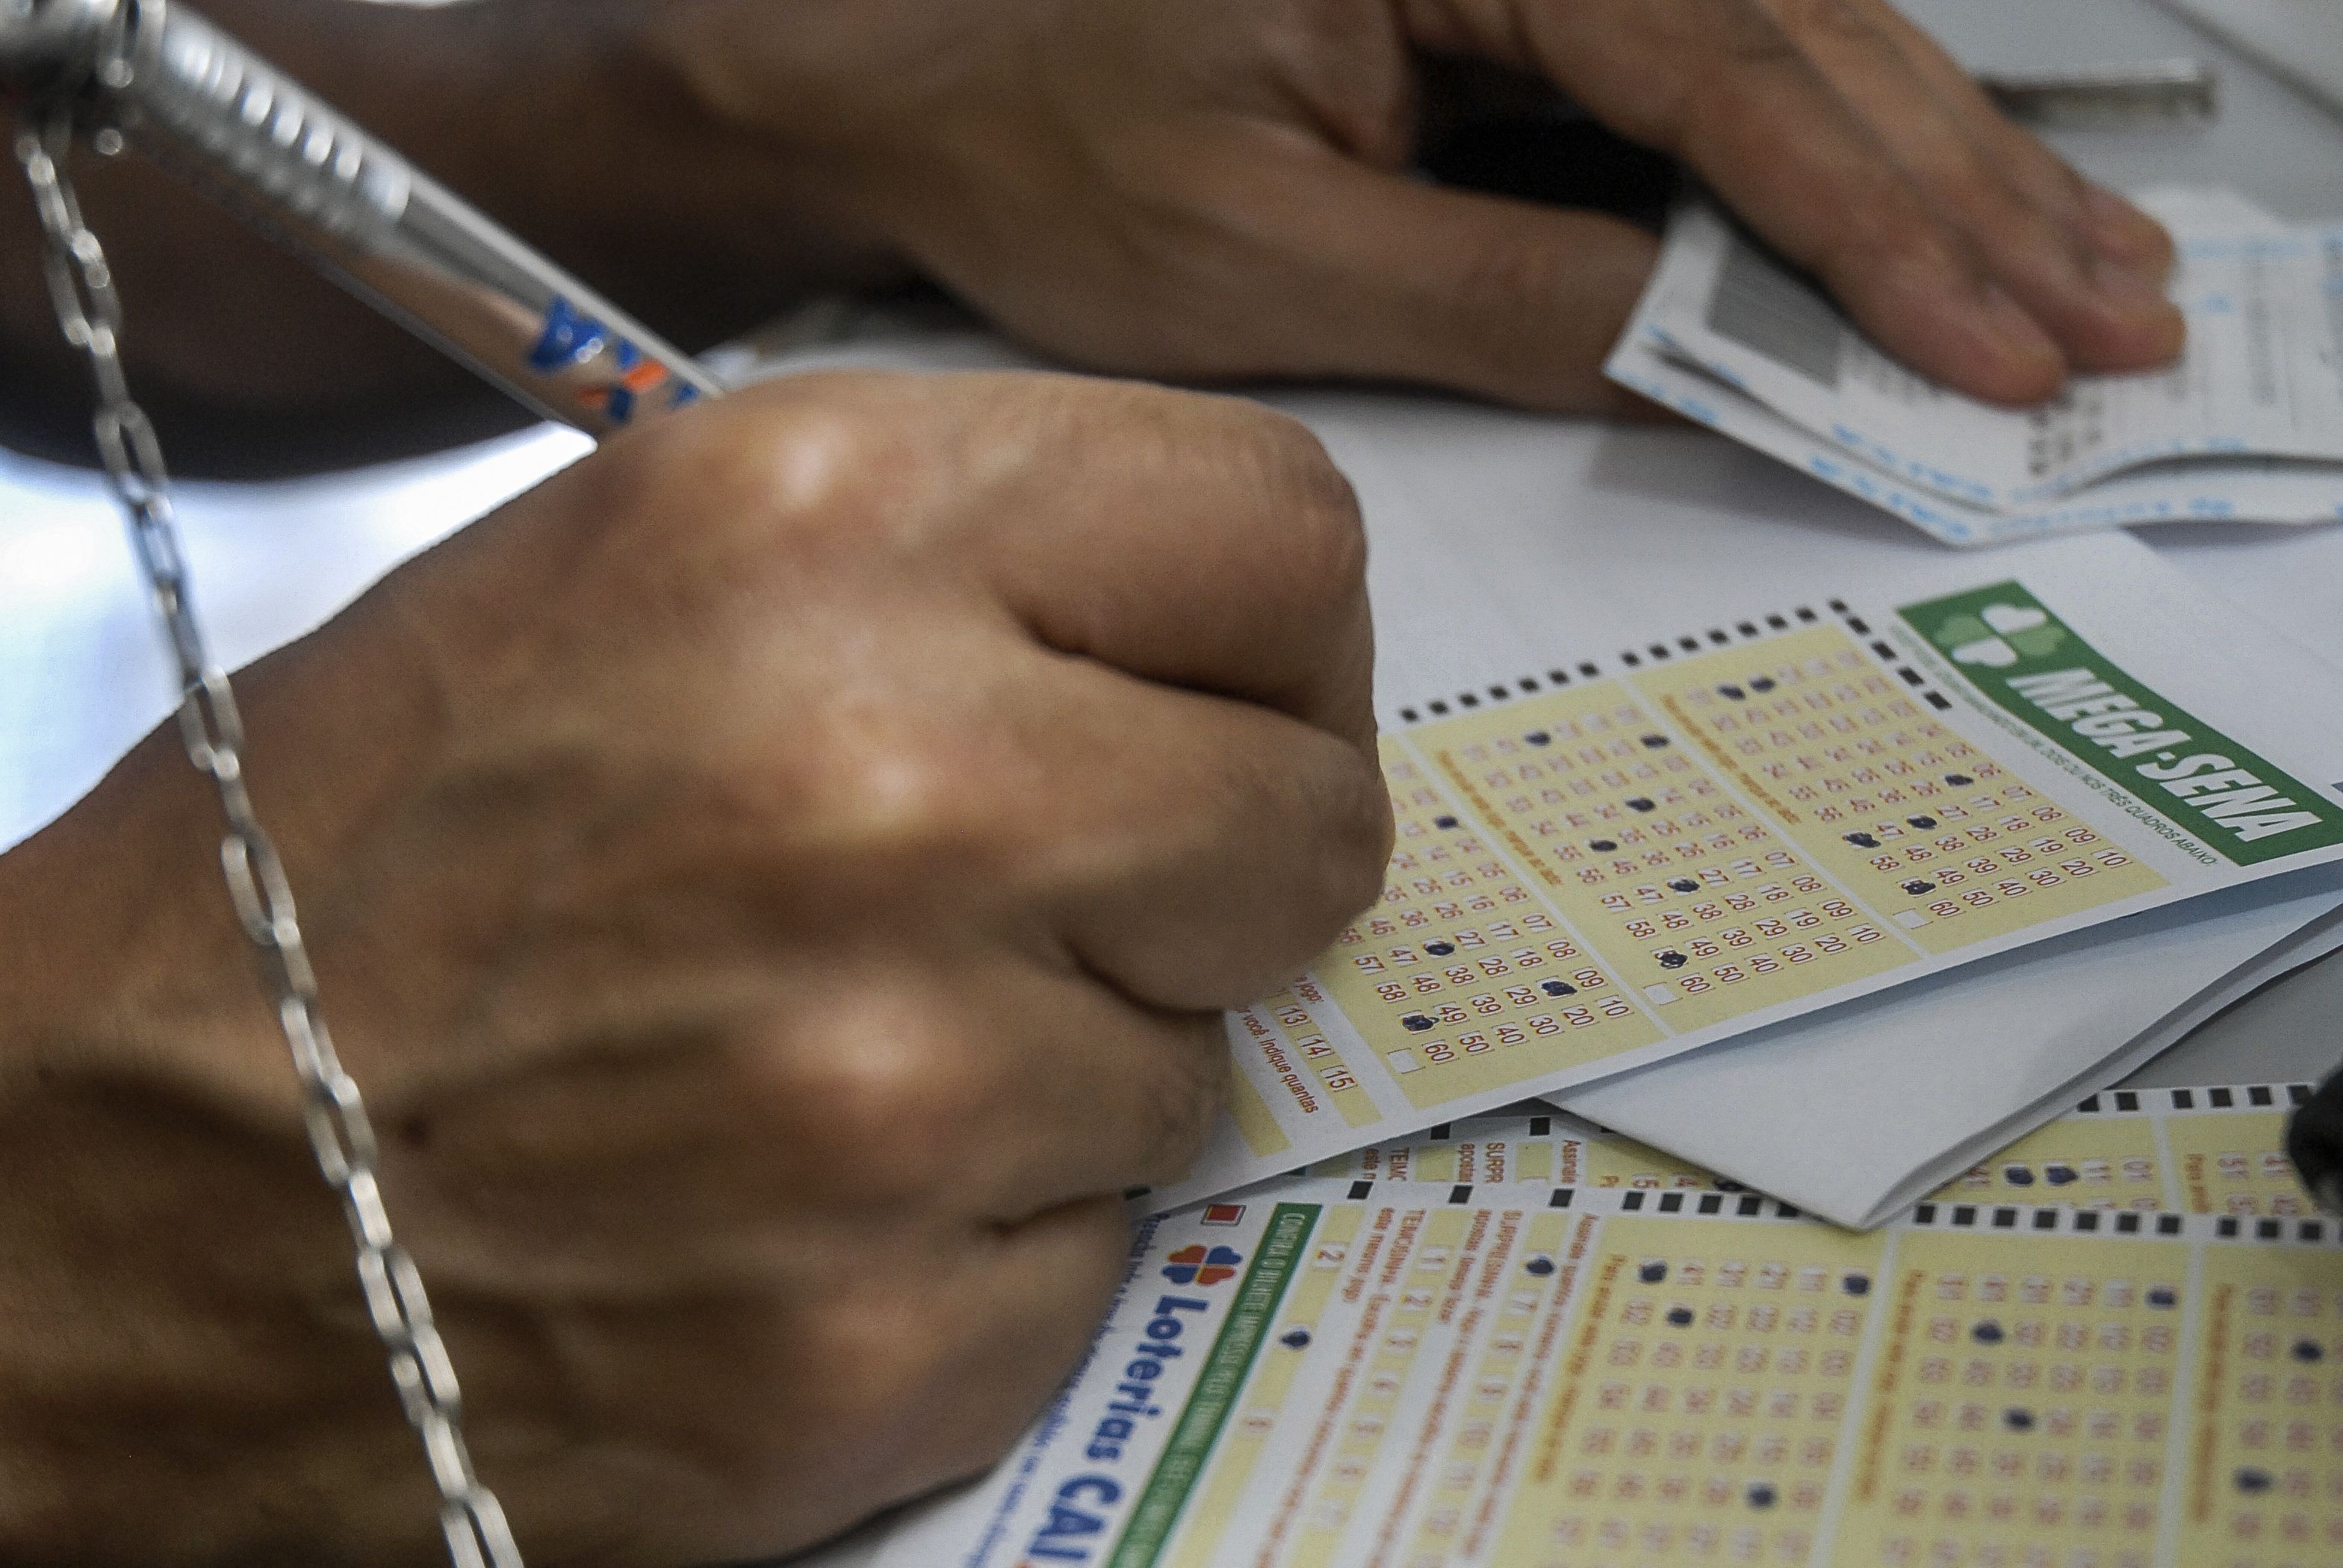 Funcionários de uma lotérica em Apucarana, na região norte do Paraná caíram em um golpe, perdendo R$ 46 mil - Foto: Marcello Casal Jr/ Agência Brasil